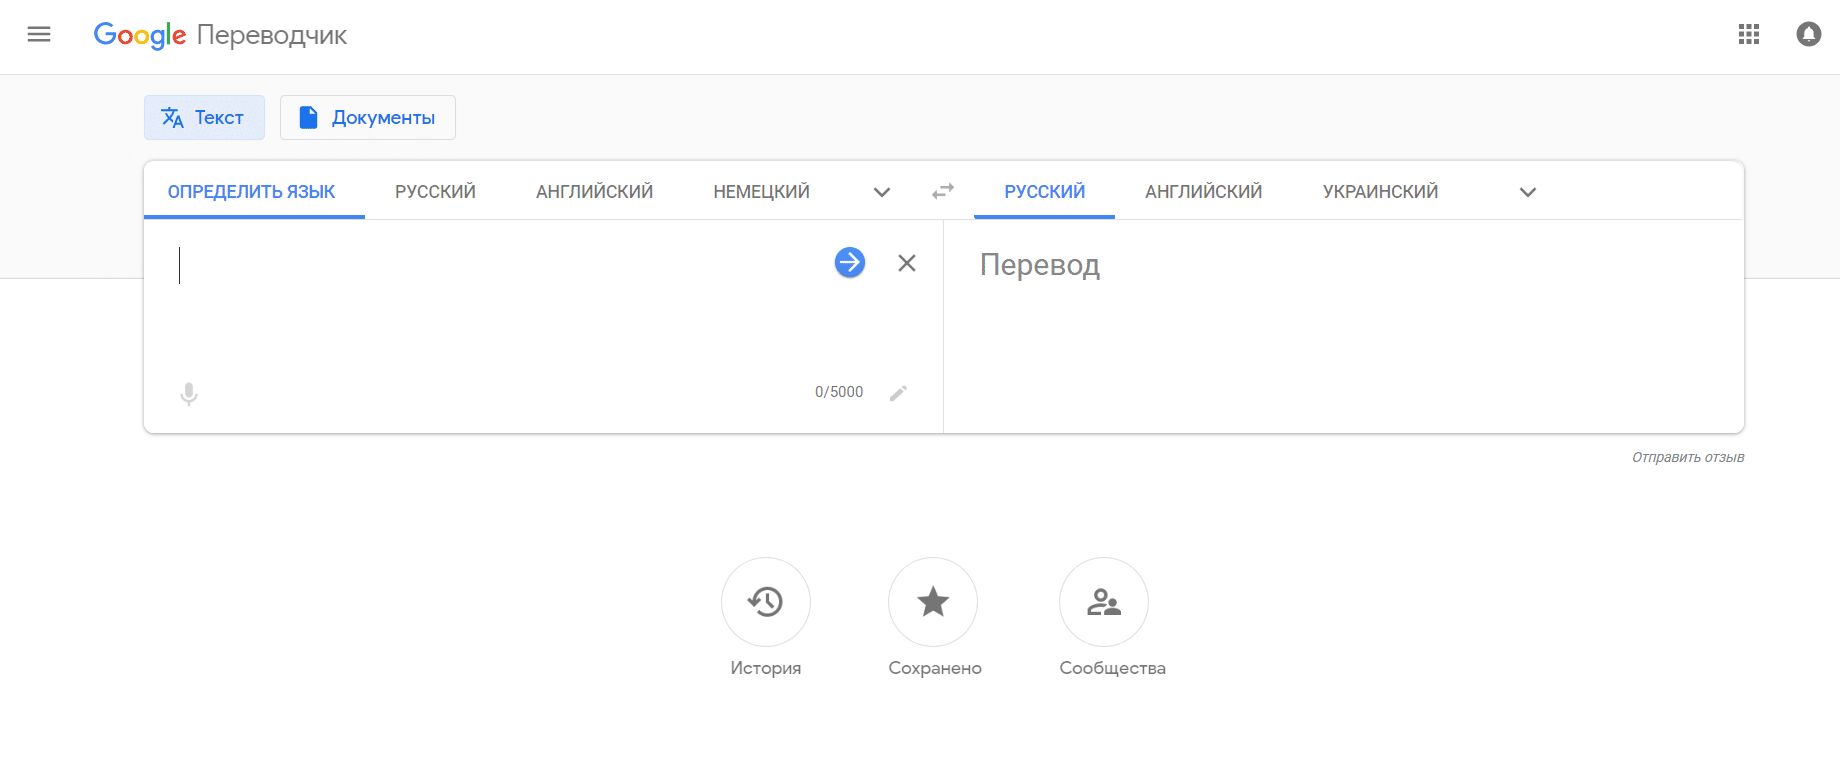 Гугл переводчик фото с немецкого на русский